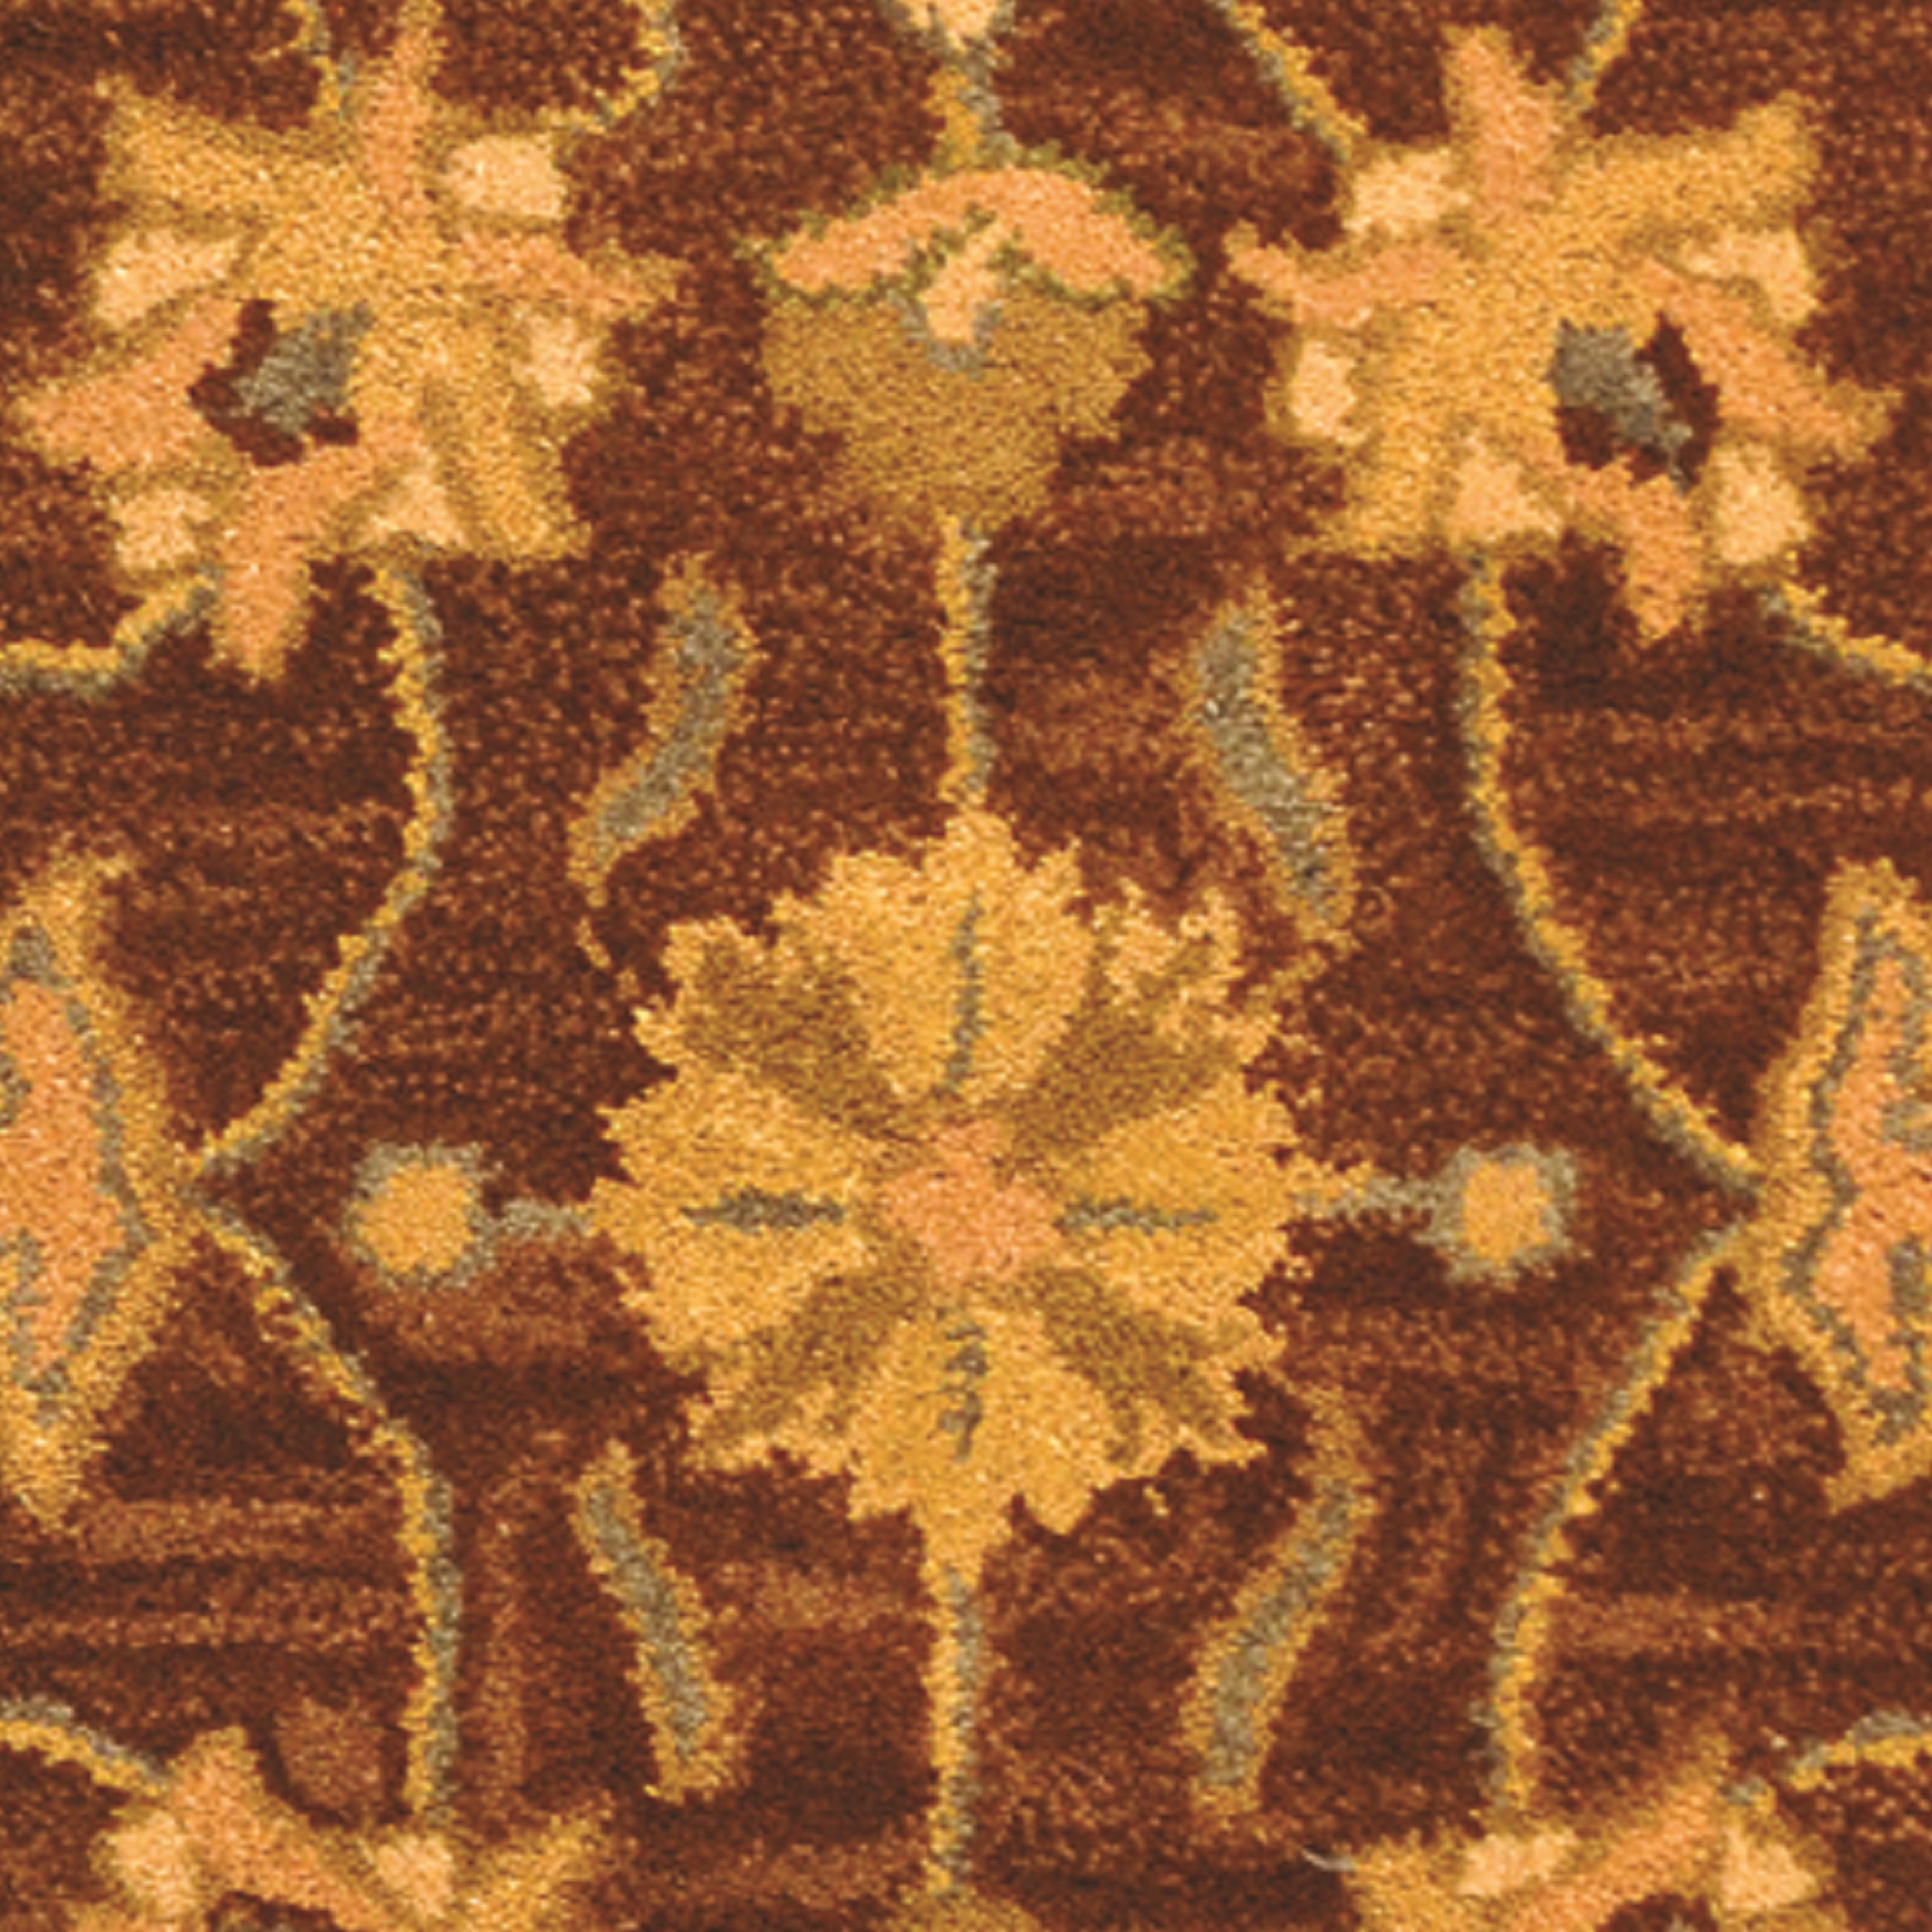 SAFAVIEH Heritage Regis Traditional Wool Area Rug, Brown/Blue, 3' x 5' - image 3 of 4